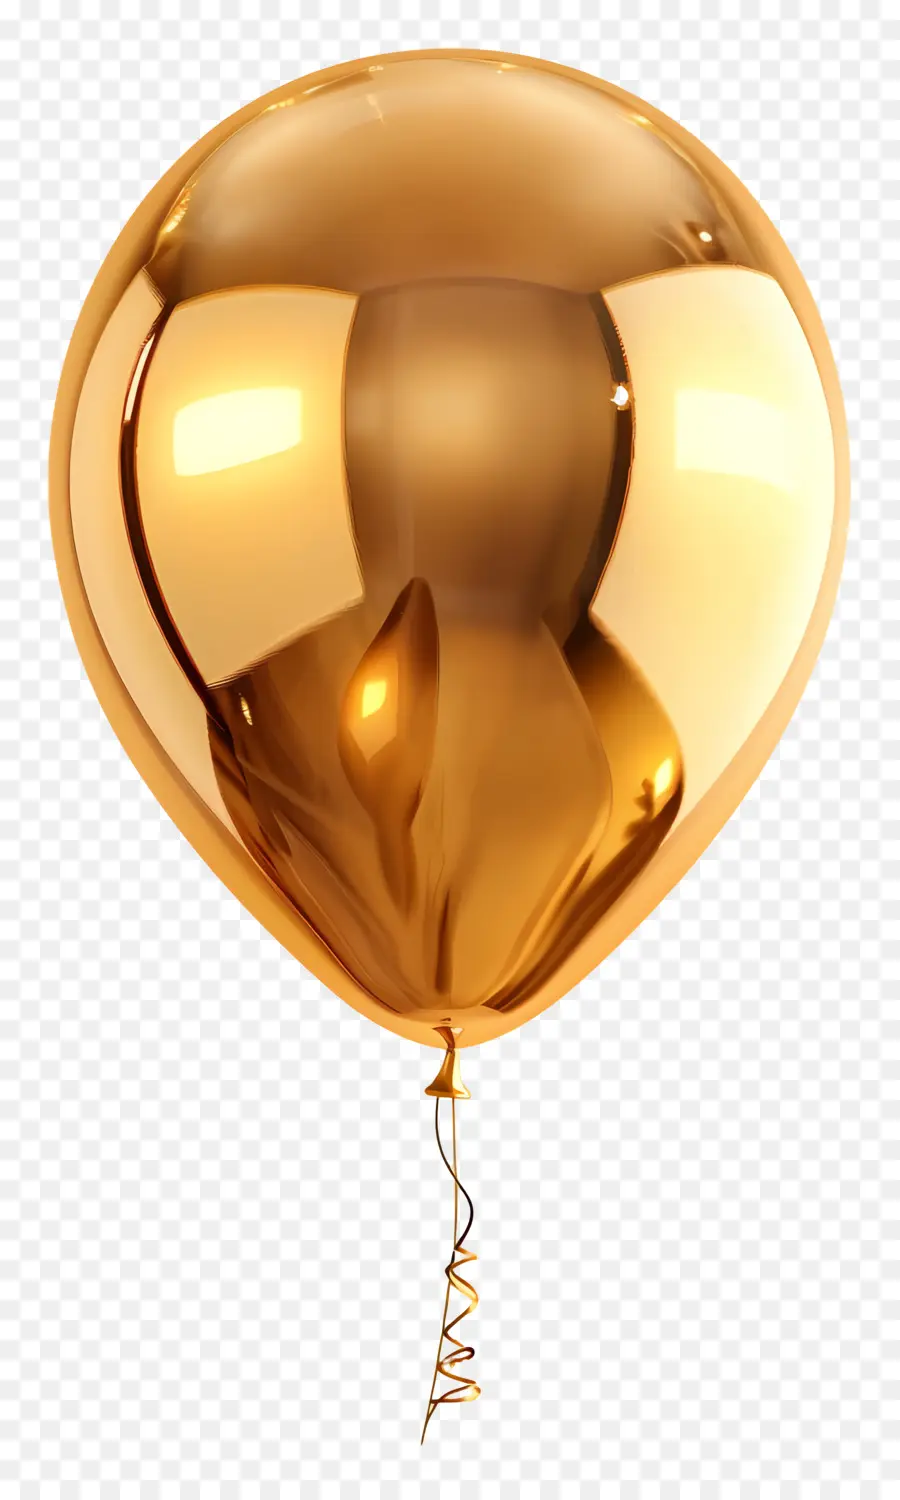 pallone d'oro - Palloncino dorato con lucentezza metallica, superficie riflettente